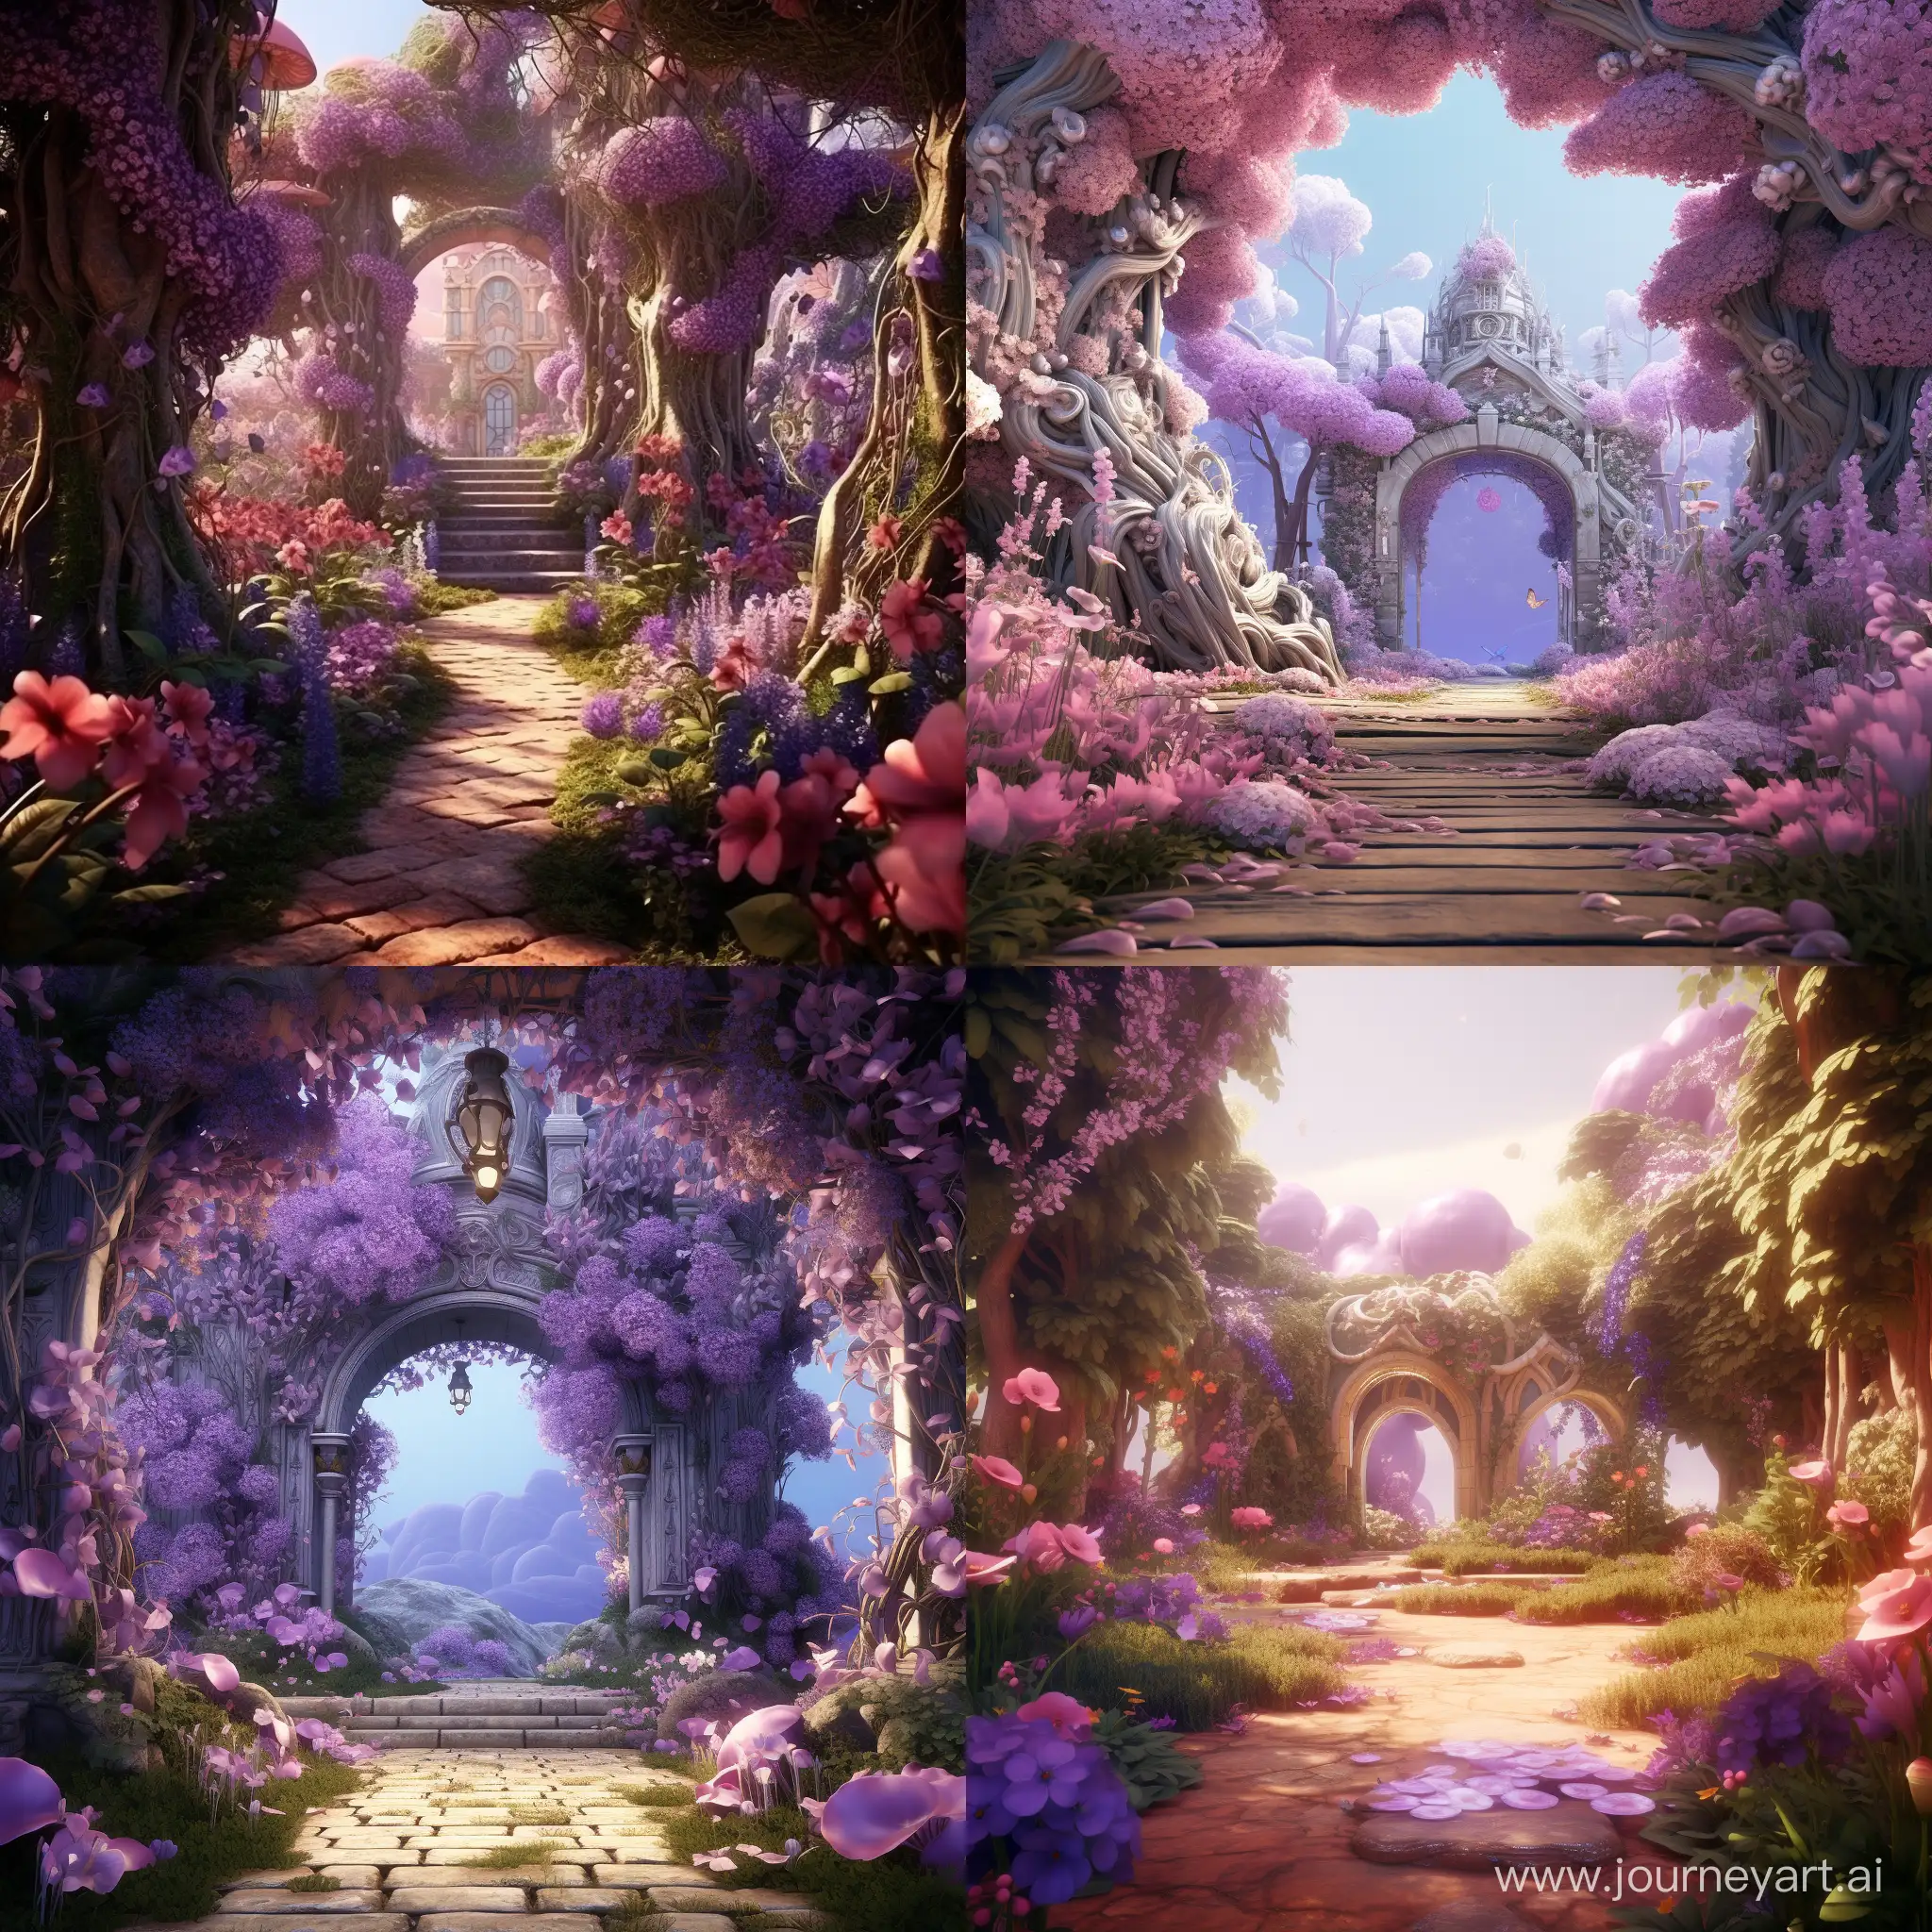 A magical lilac garden. 3D animation 